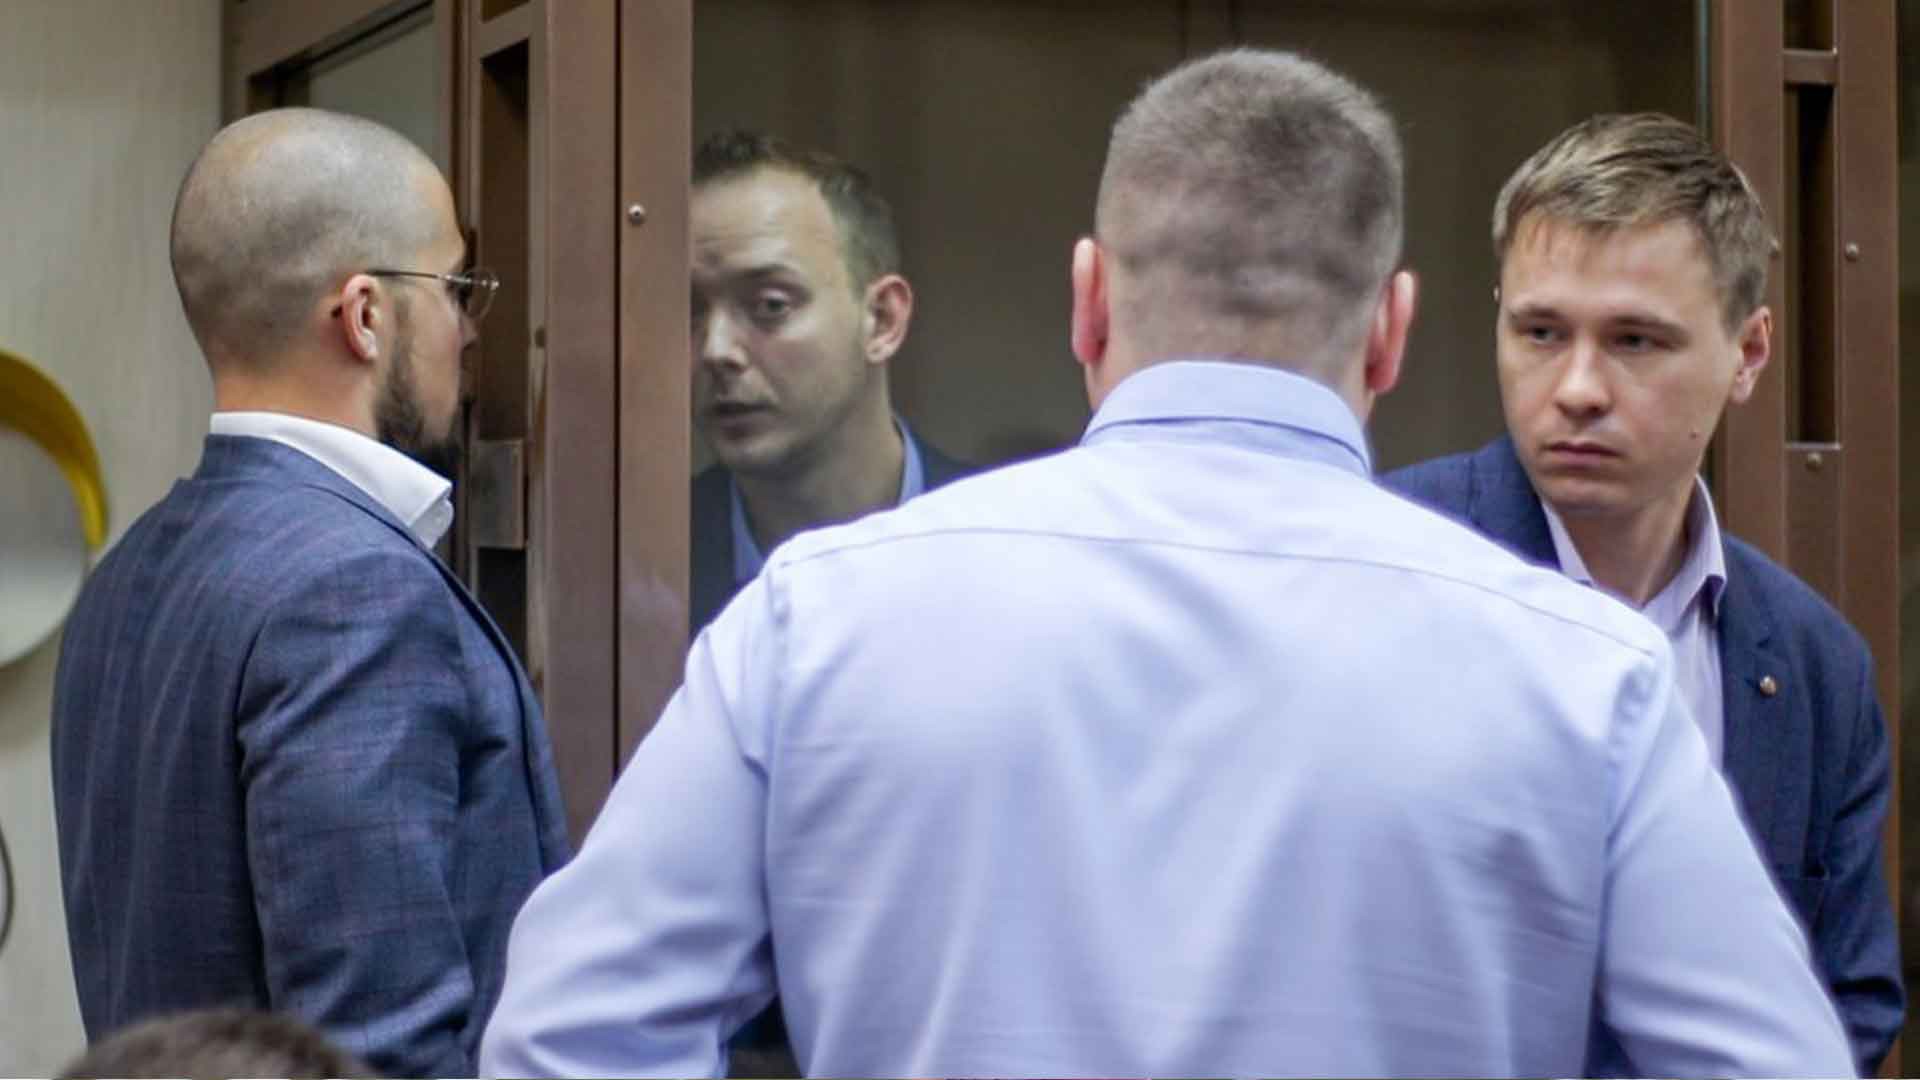 Dailystorm - СПЧ настаивает на рассмотрении дела Сафронова в «максимально открытом» режиме